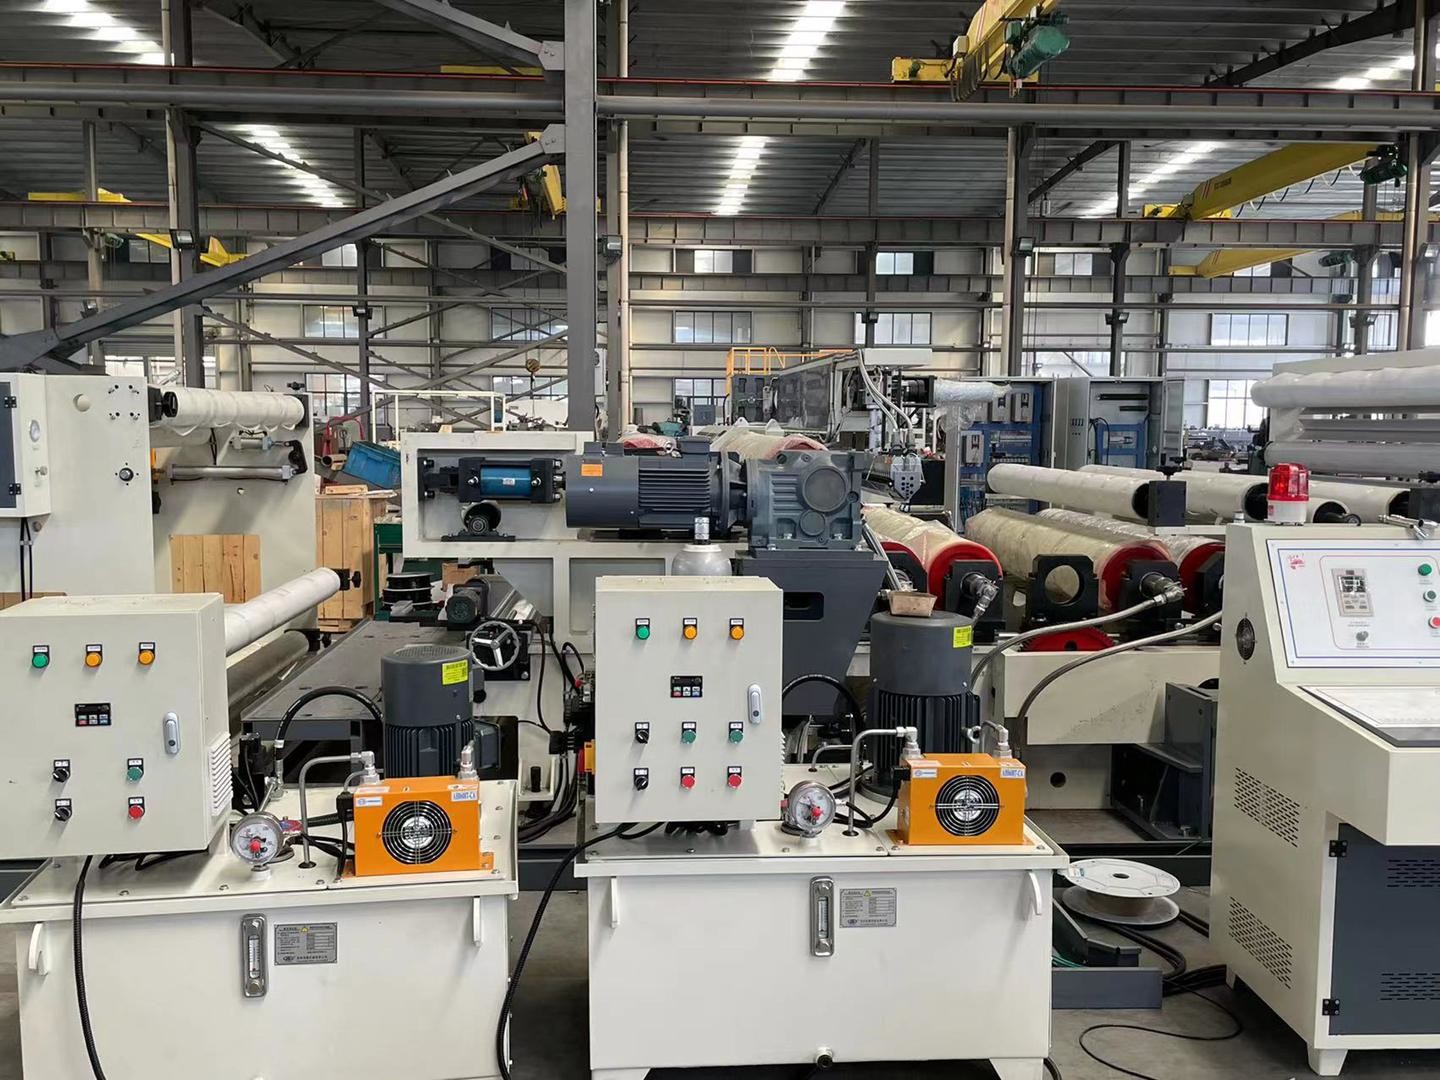 Jiangyin City HongHua Machinery & Equipment Co., LTD